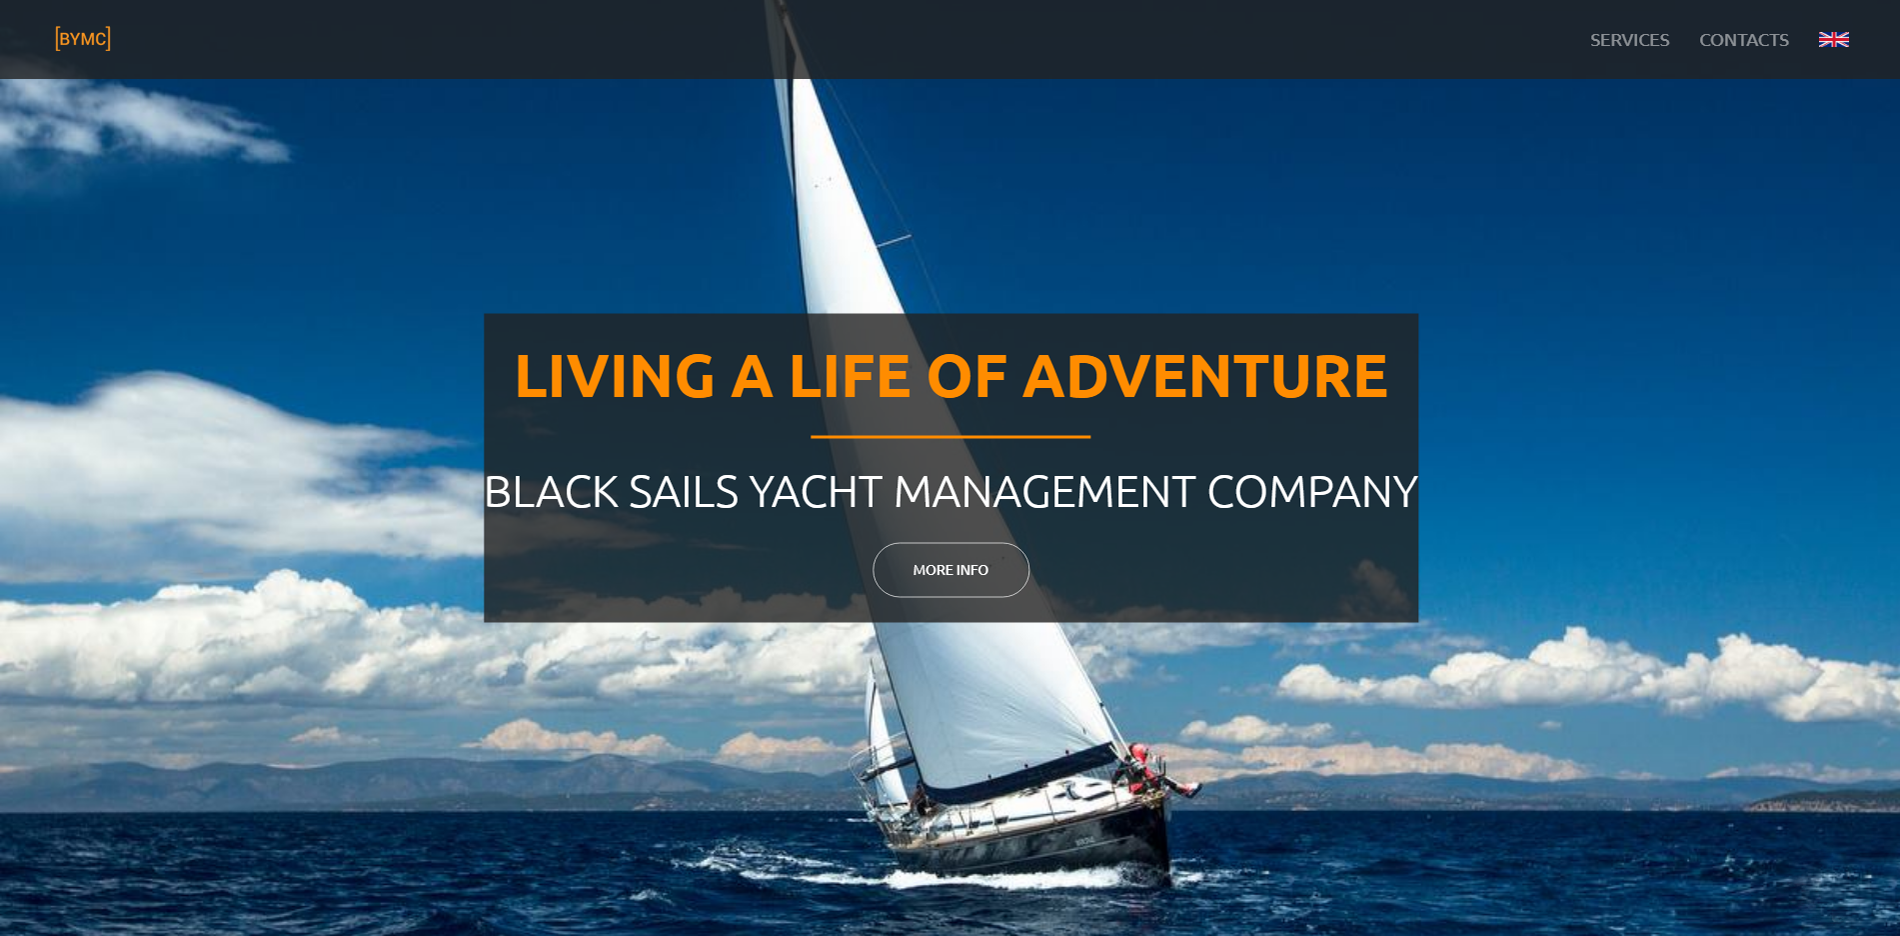 Black Sails Yacht Management Company